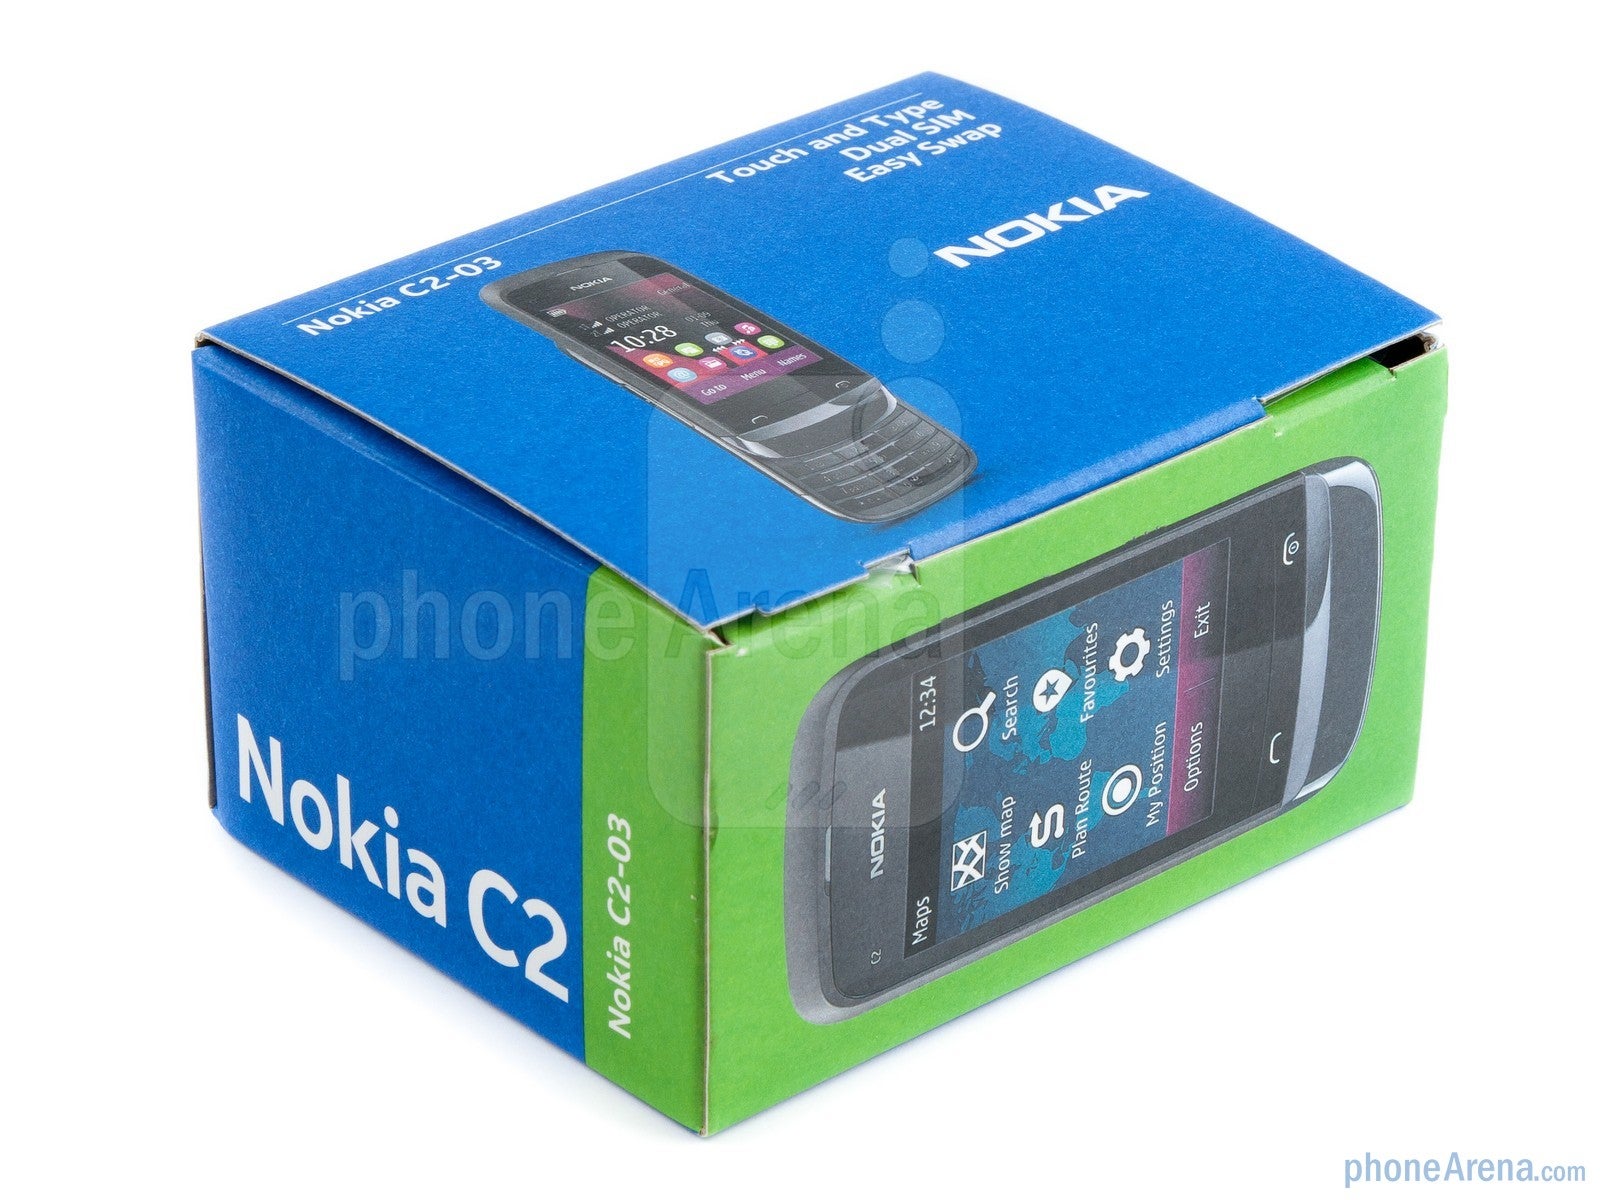 Nokia C2-03 Review